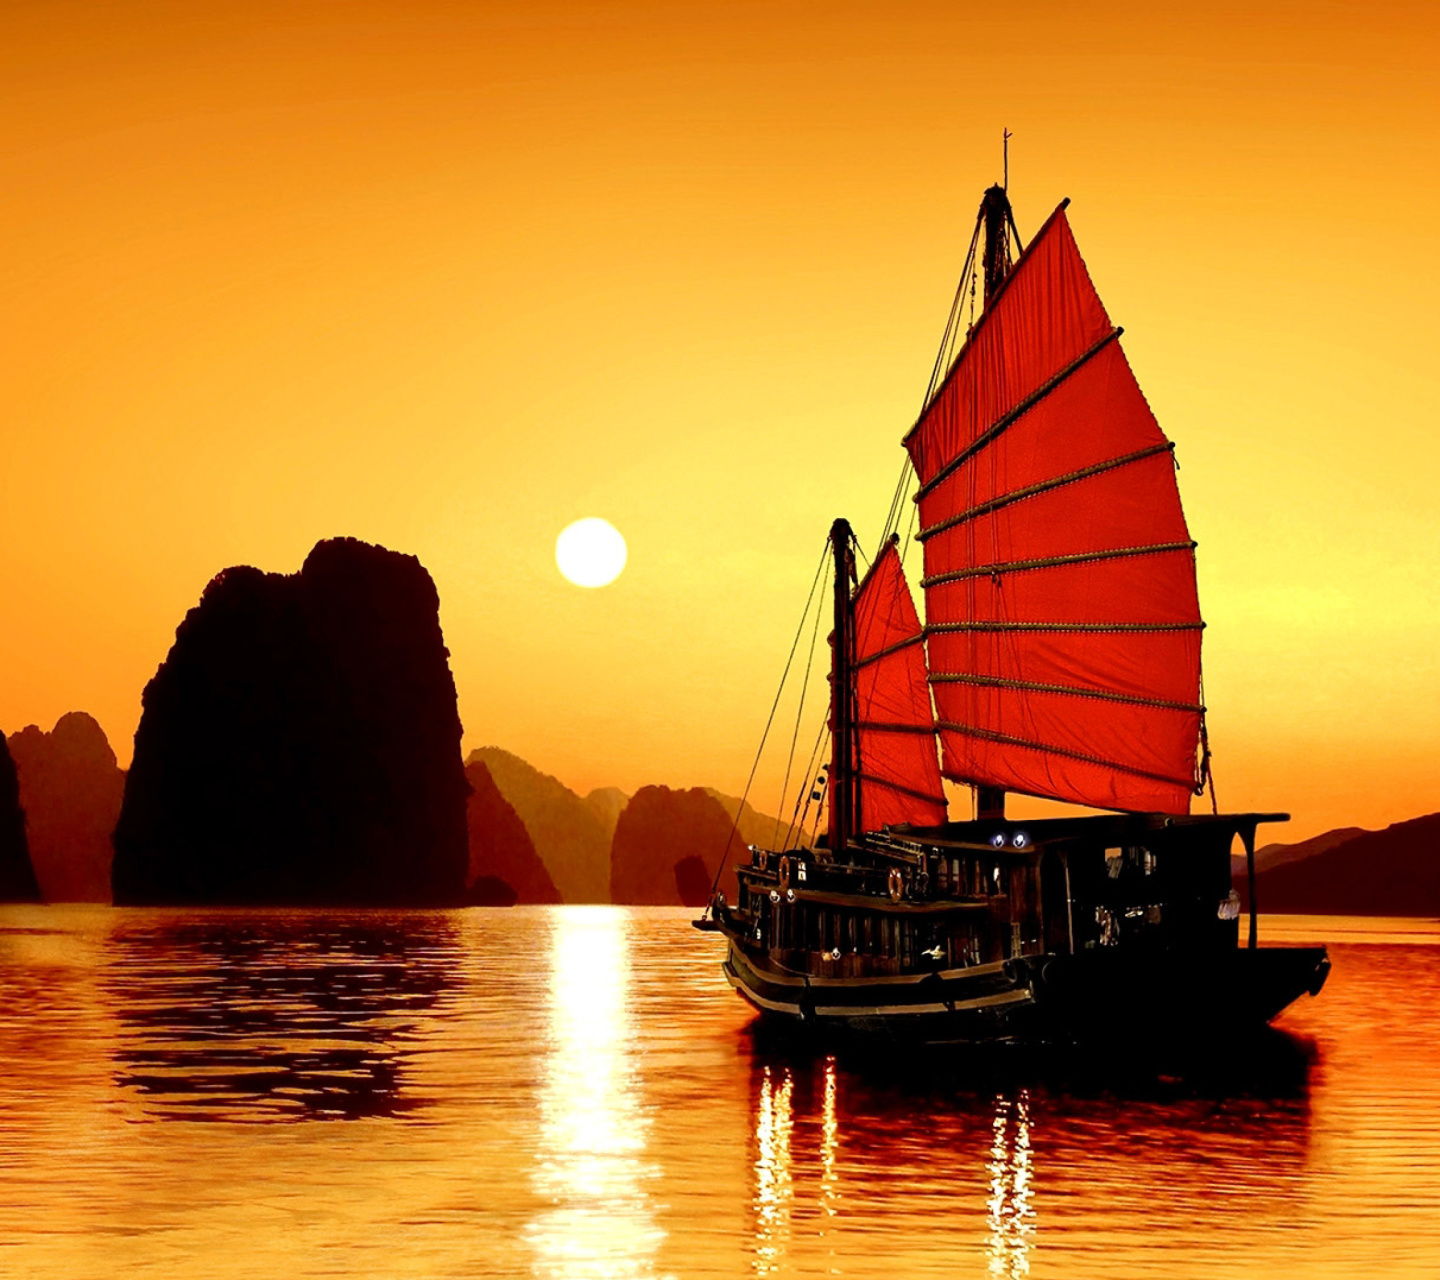 Halong Bay, Vietnama in Sunset screenshot #1 1440x1280